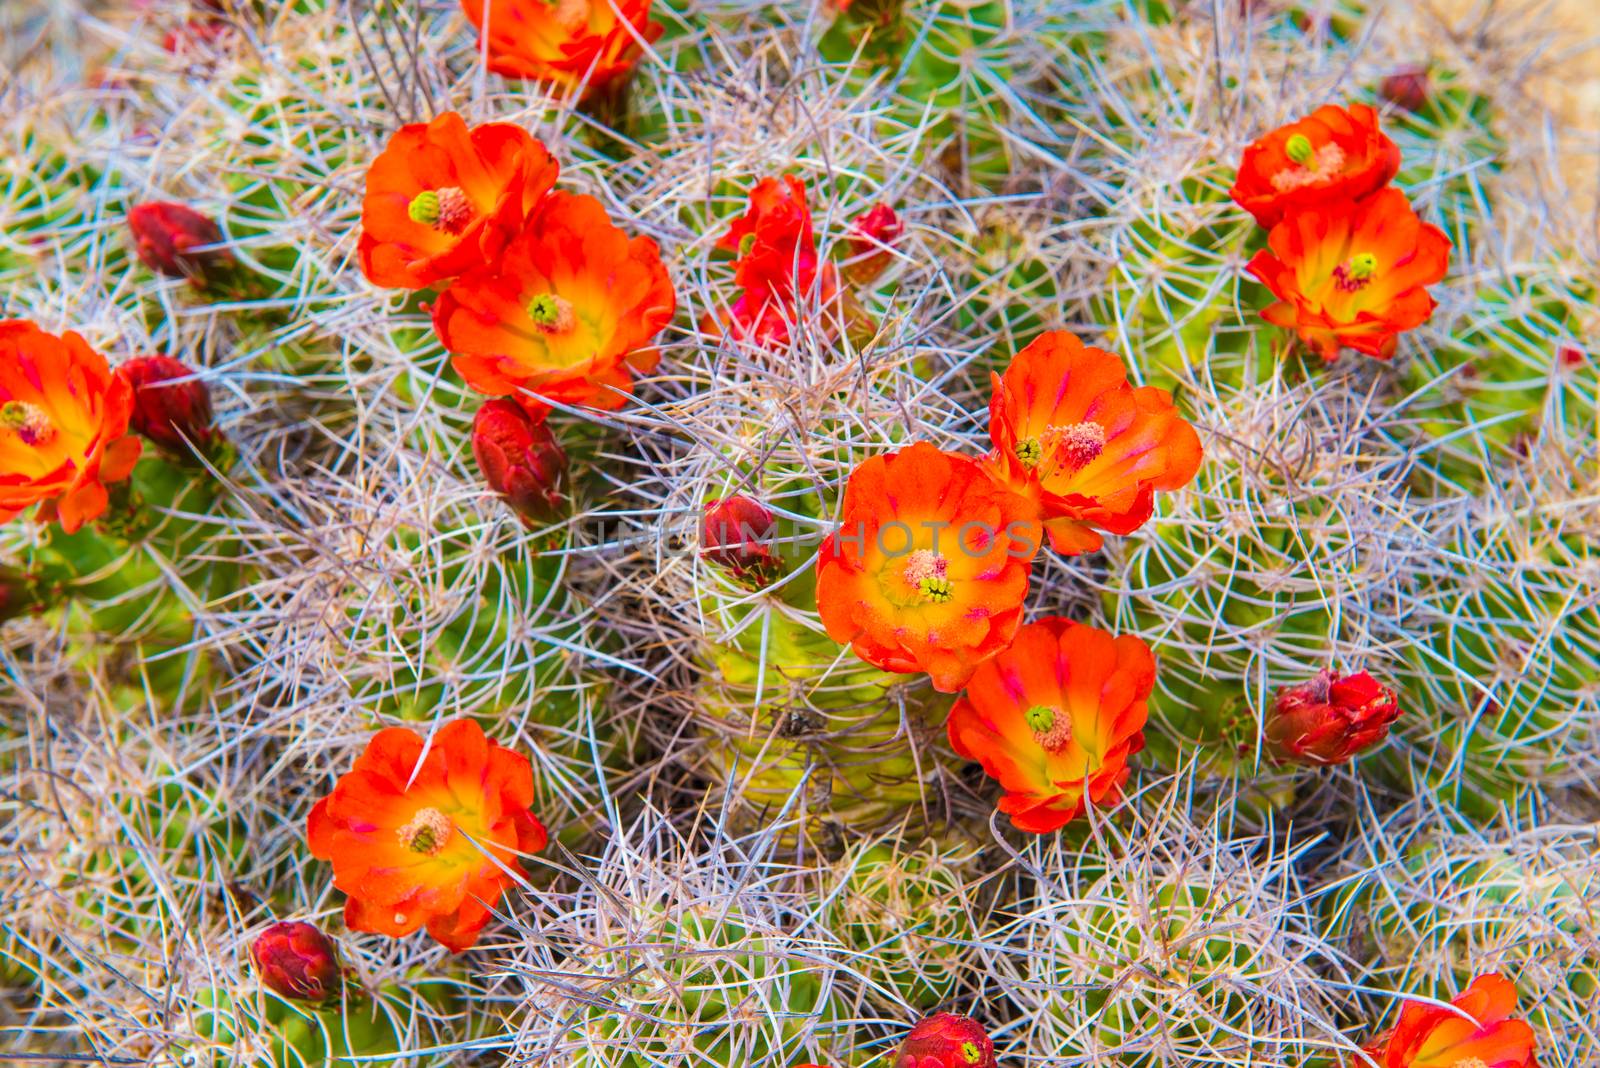 Mojave Mound Cactus by patrickstock